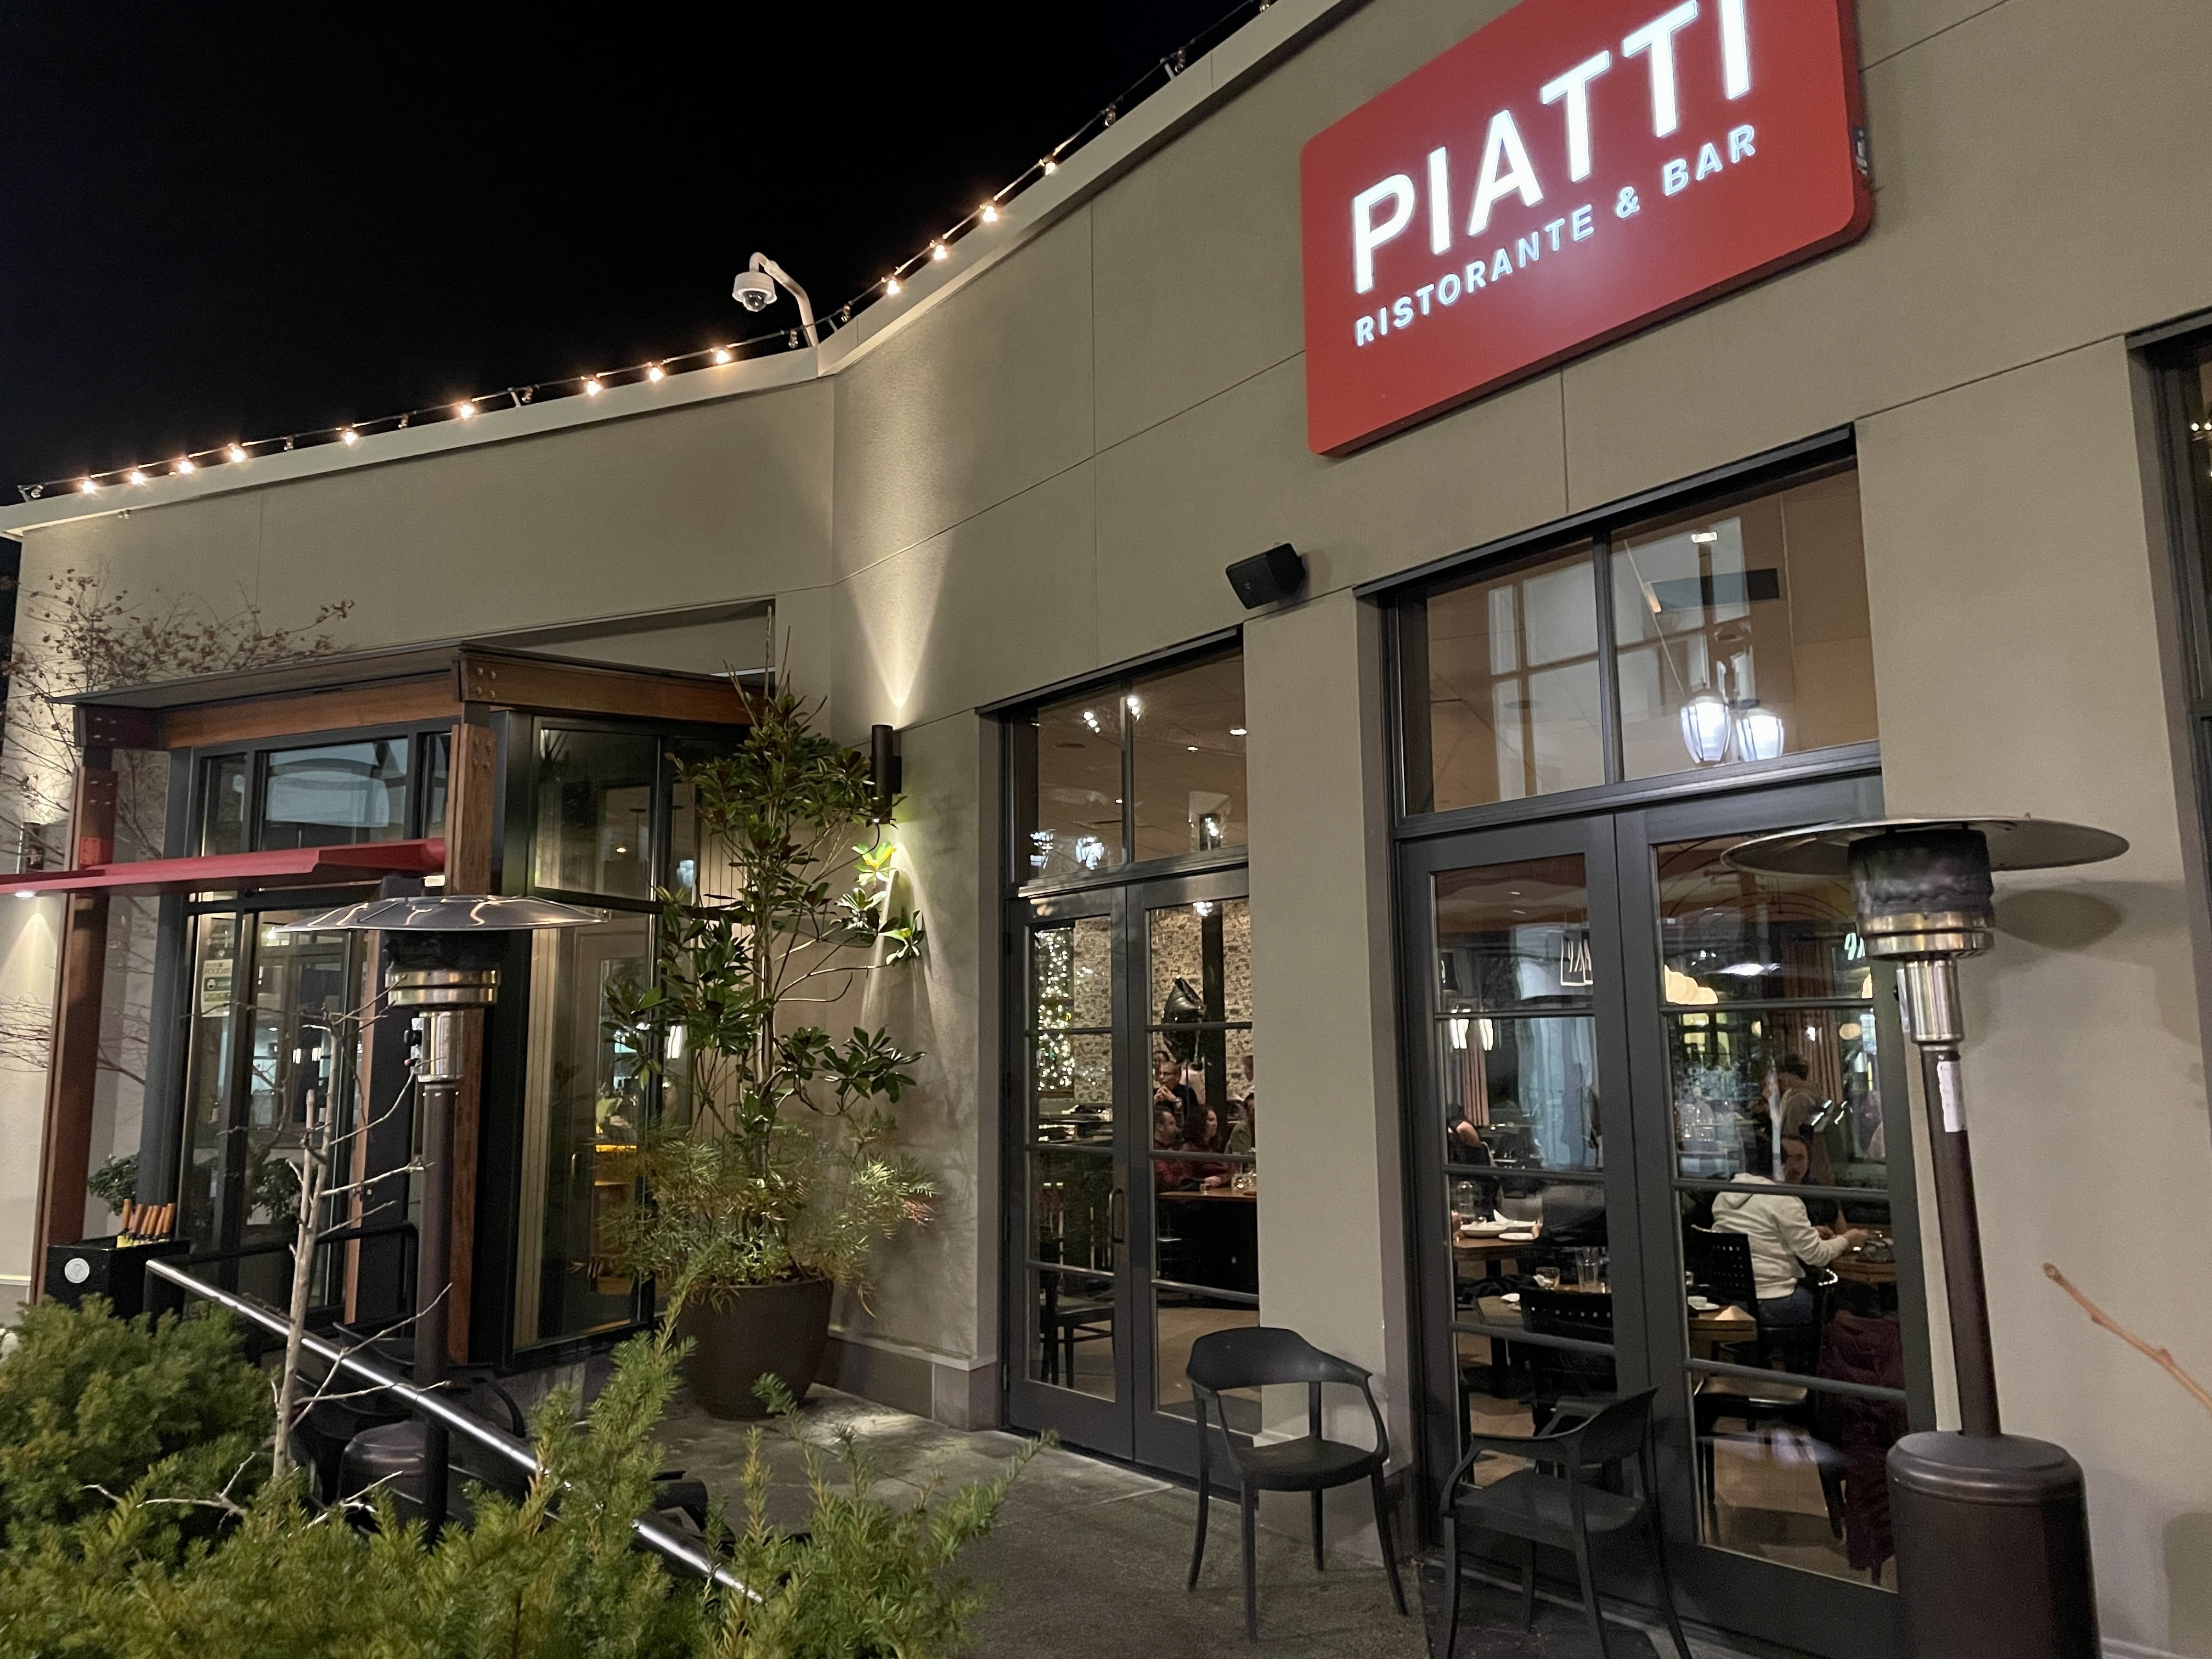 Piatti Ristorante and Bar